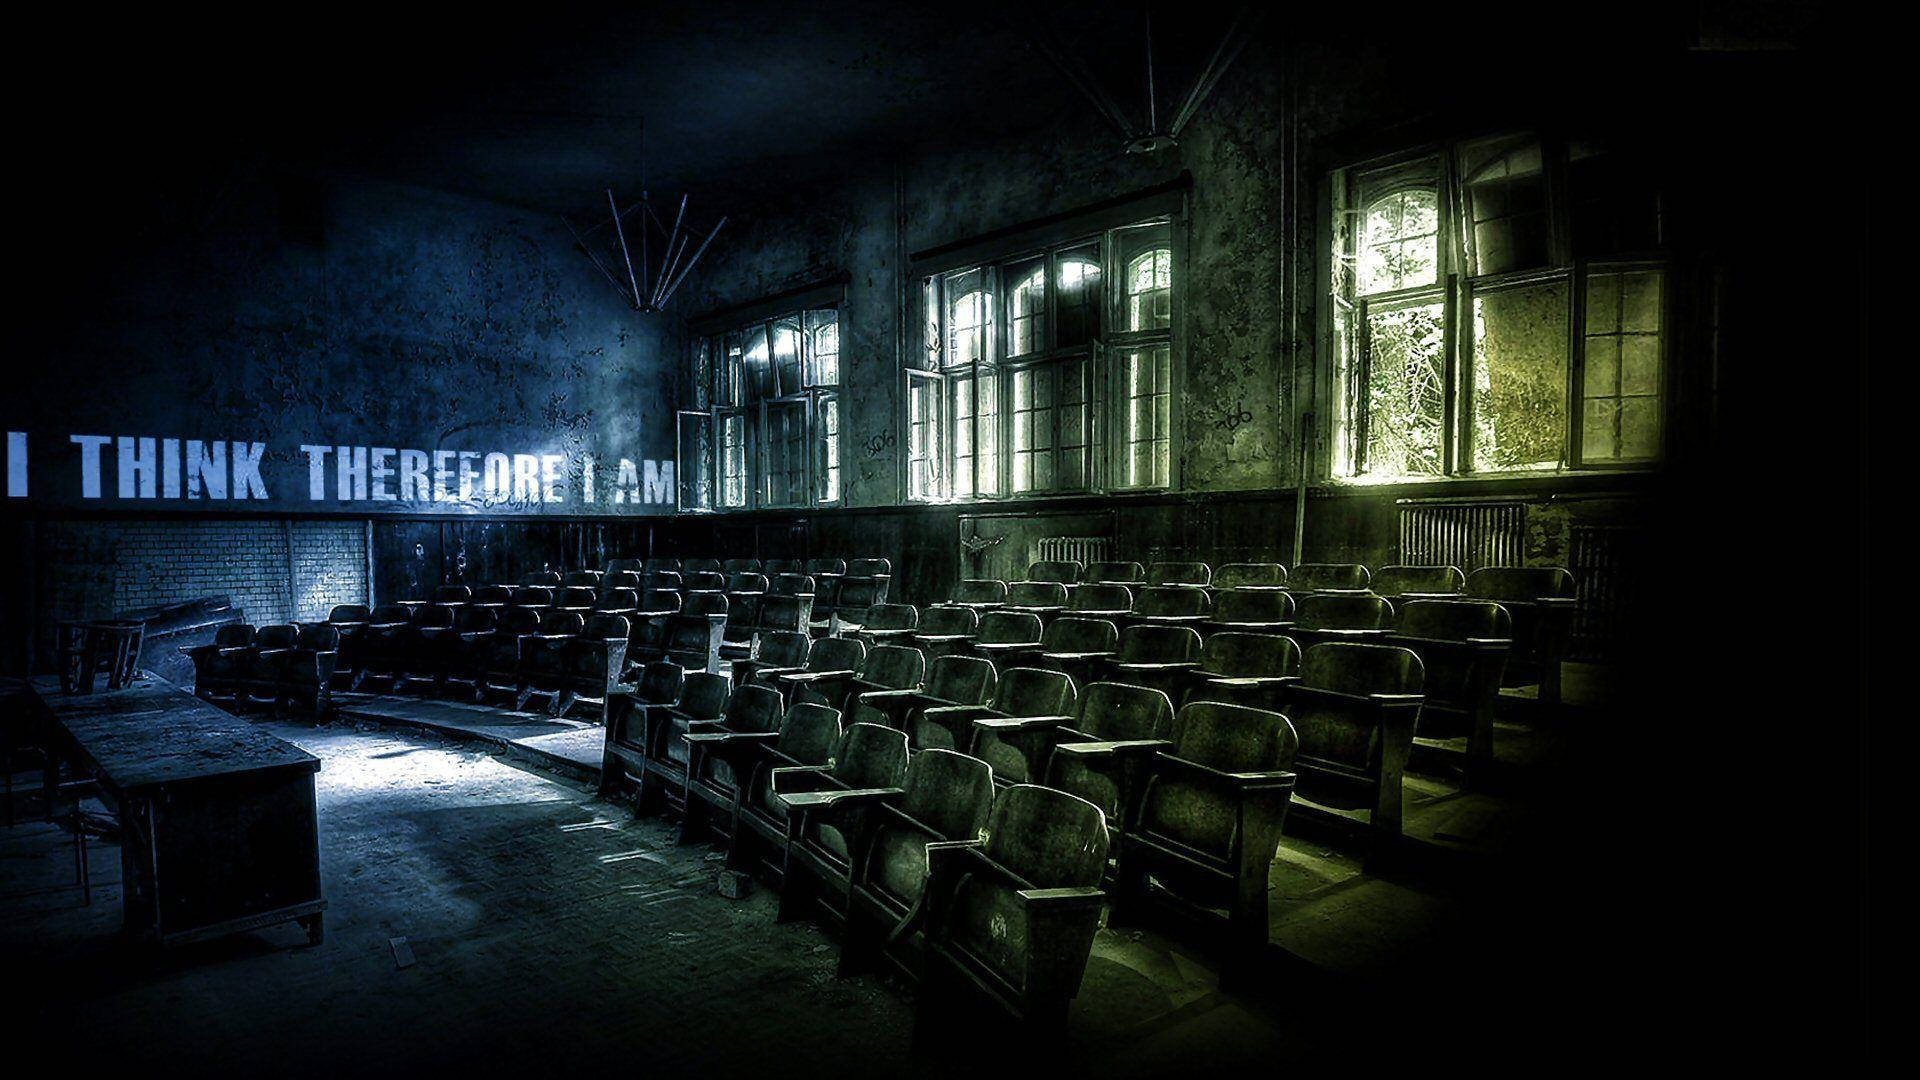 Dark Ominous Classroom